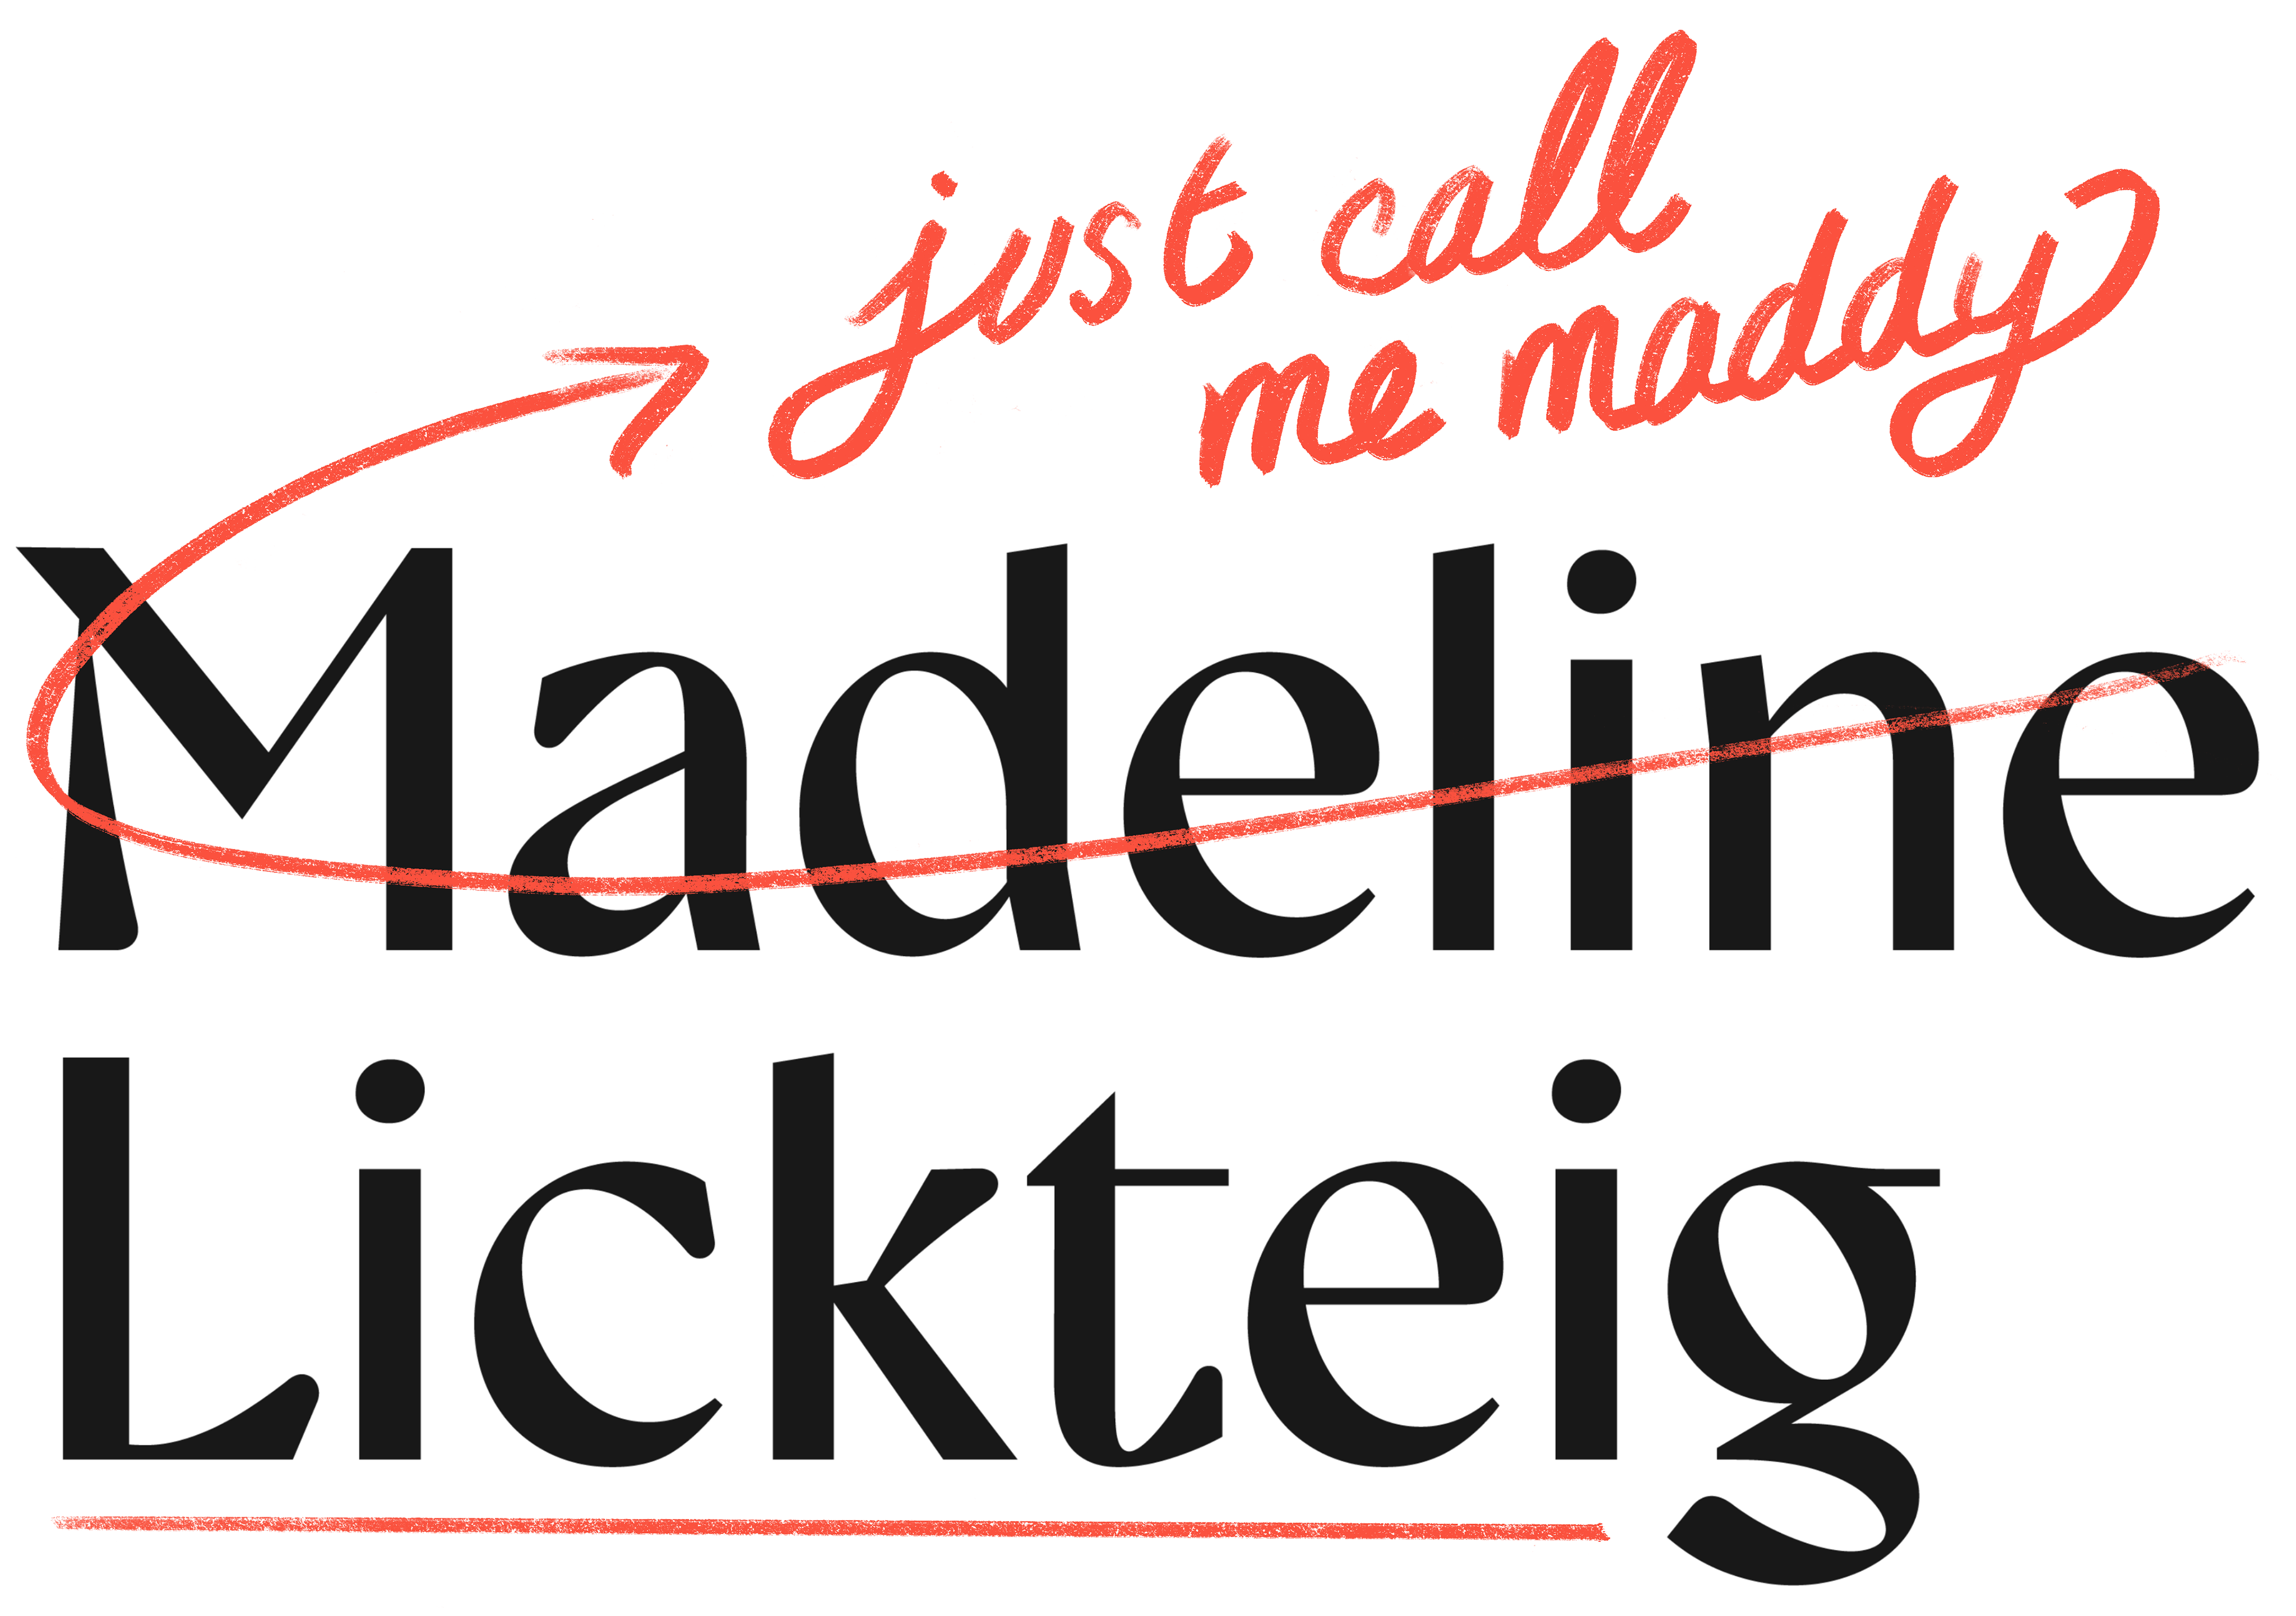 Madeline Lickteig